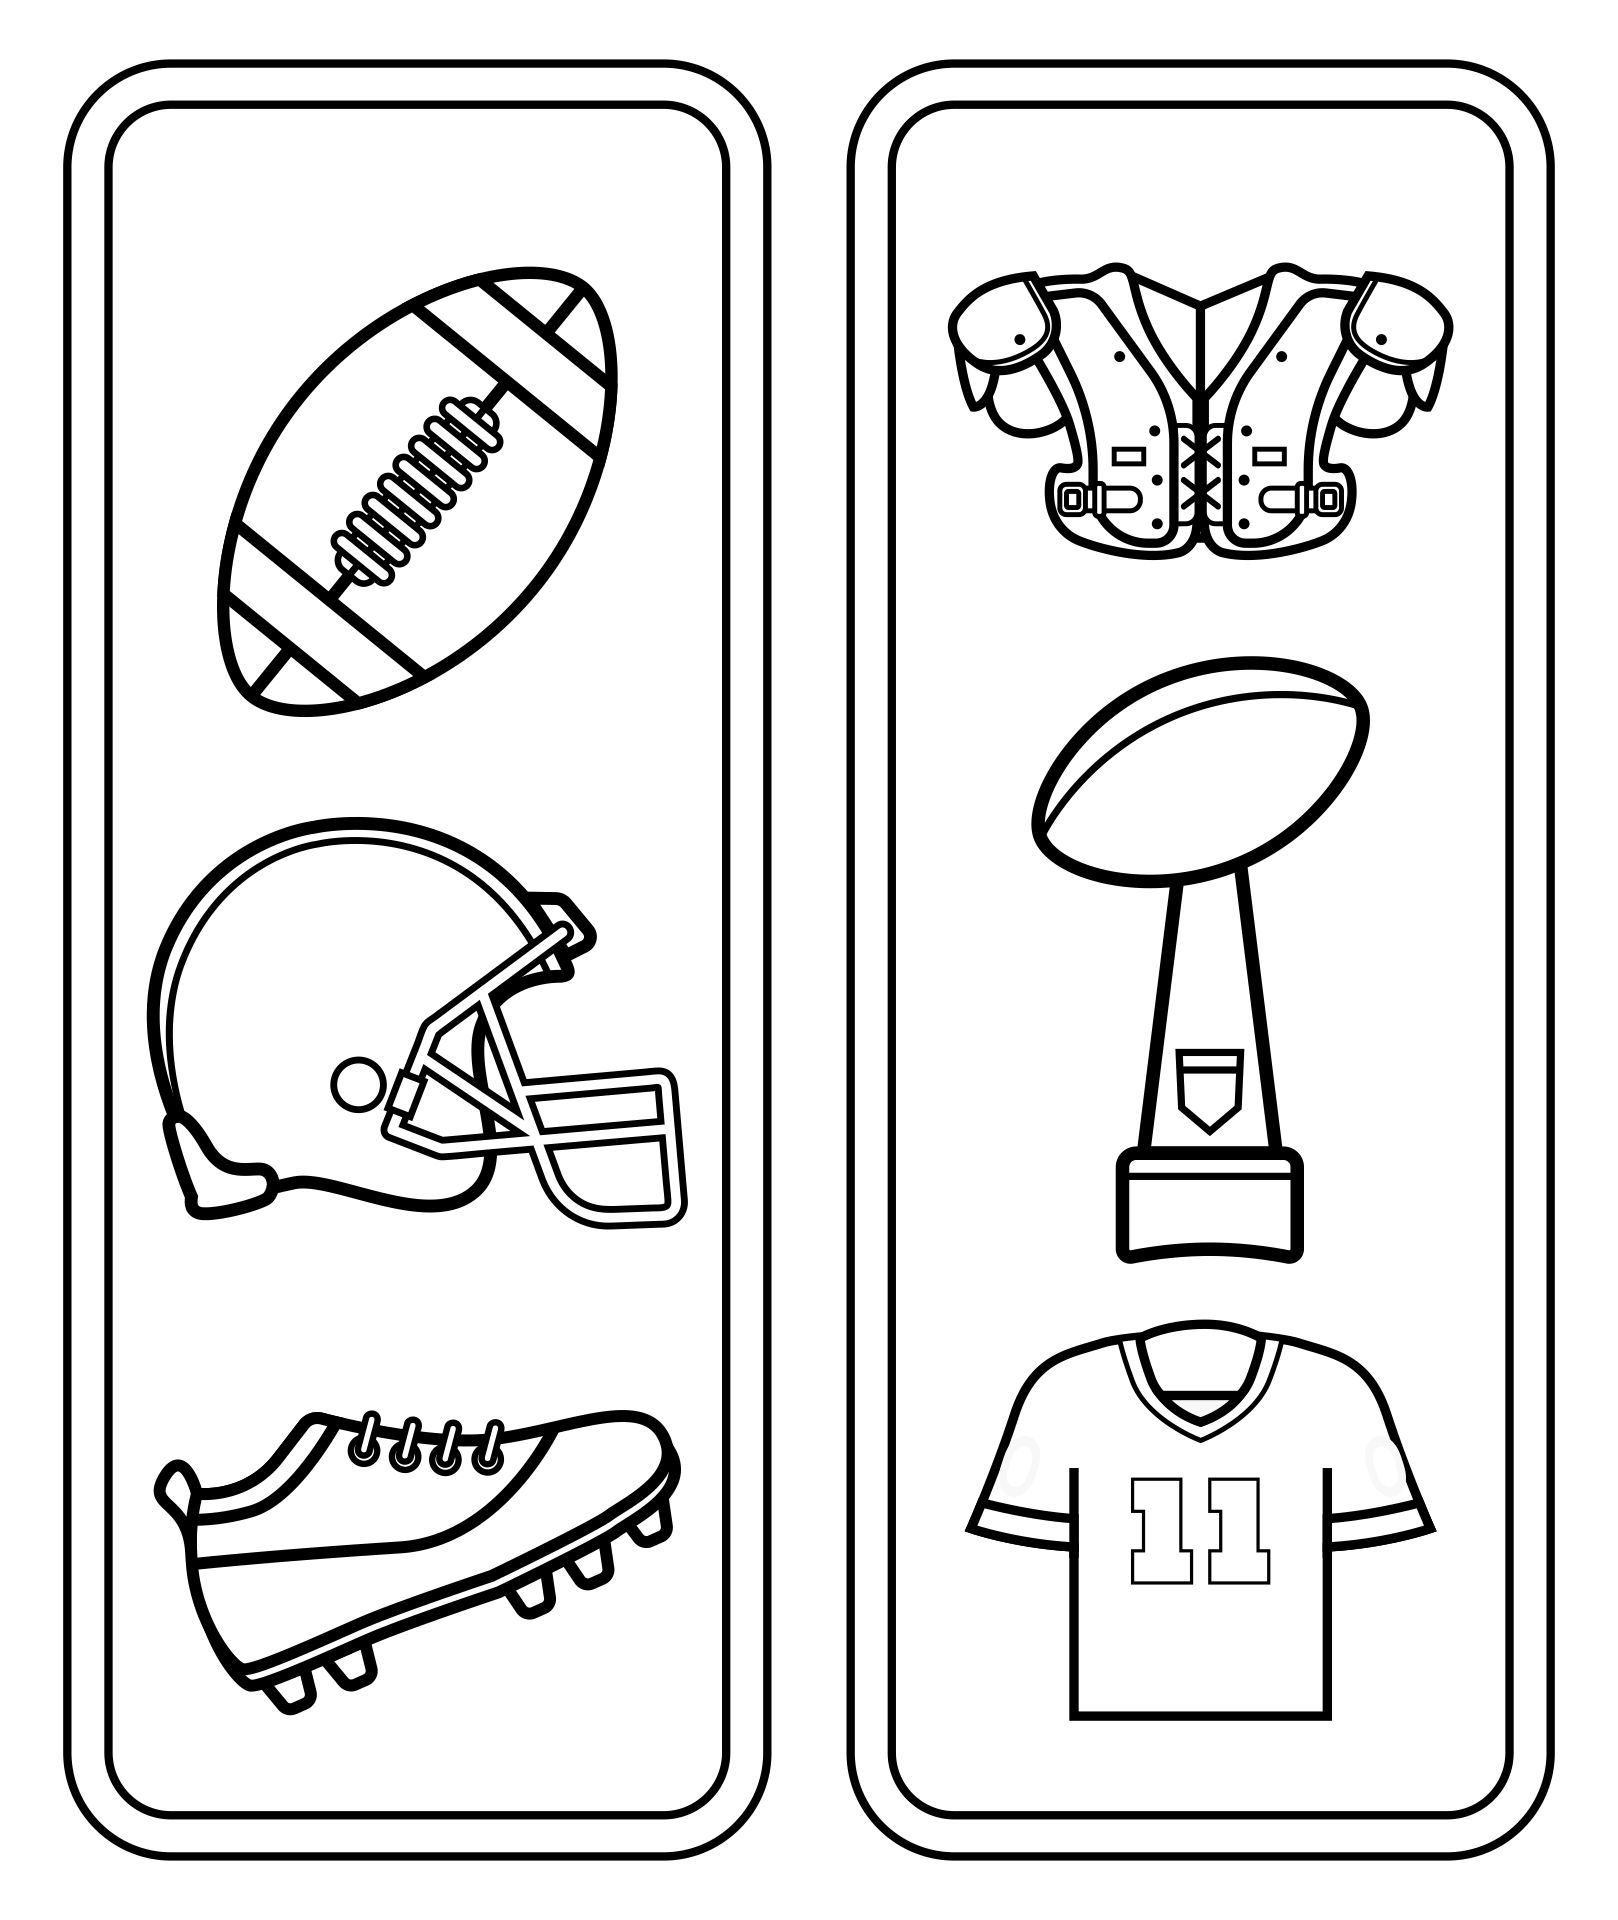 USA NFL Football Printable Bookmarks To Color